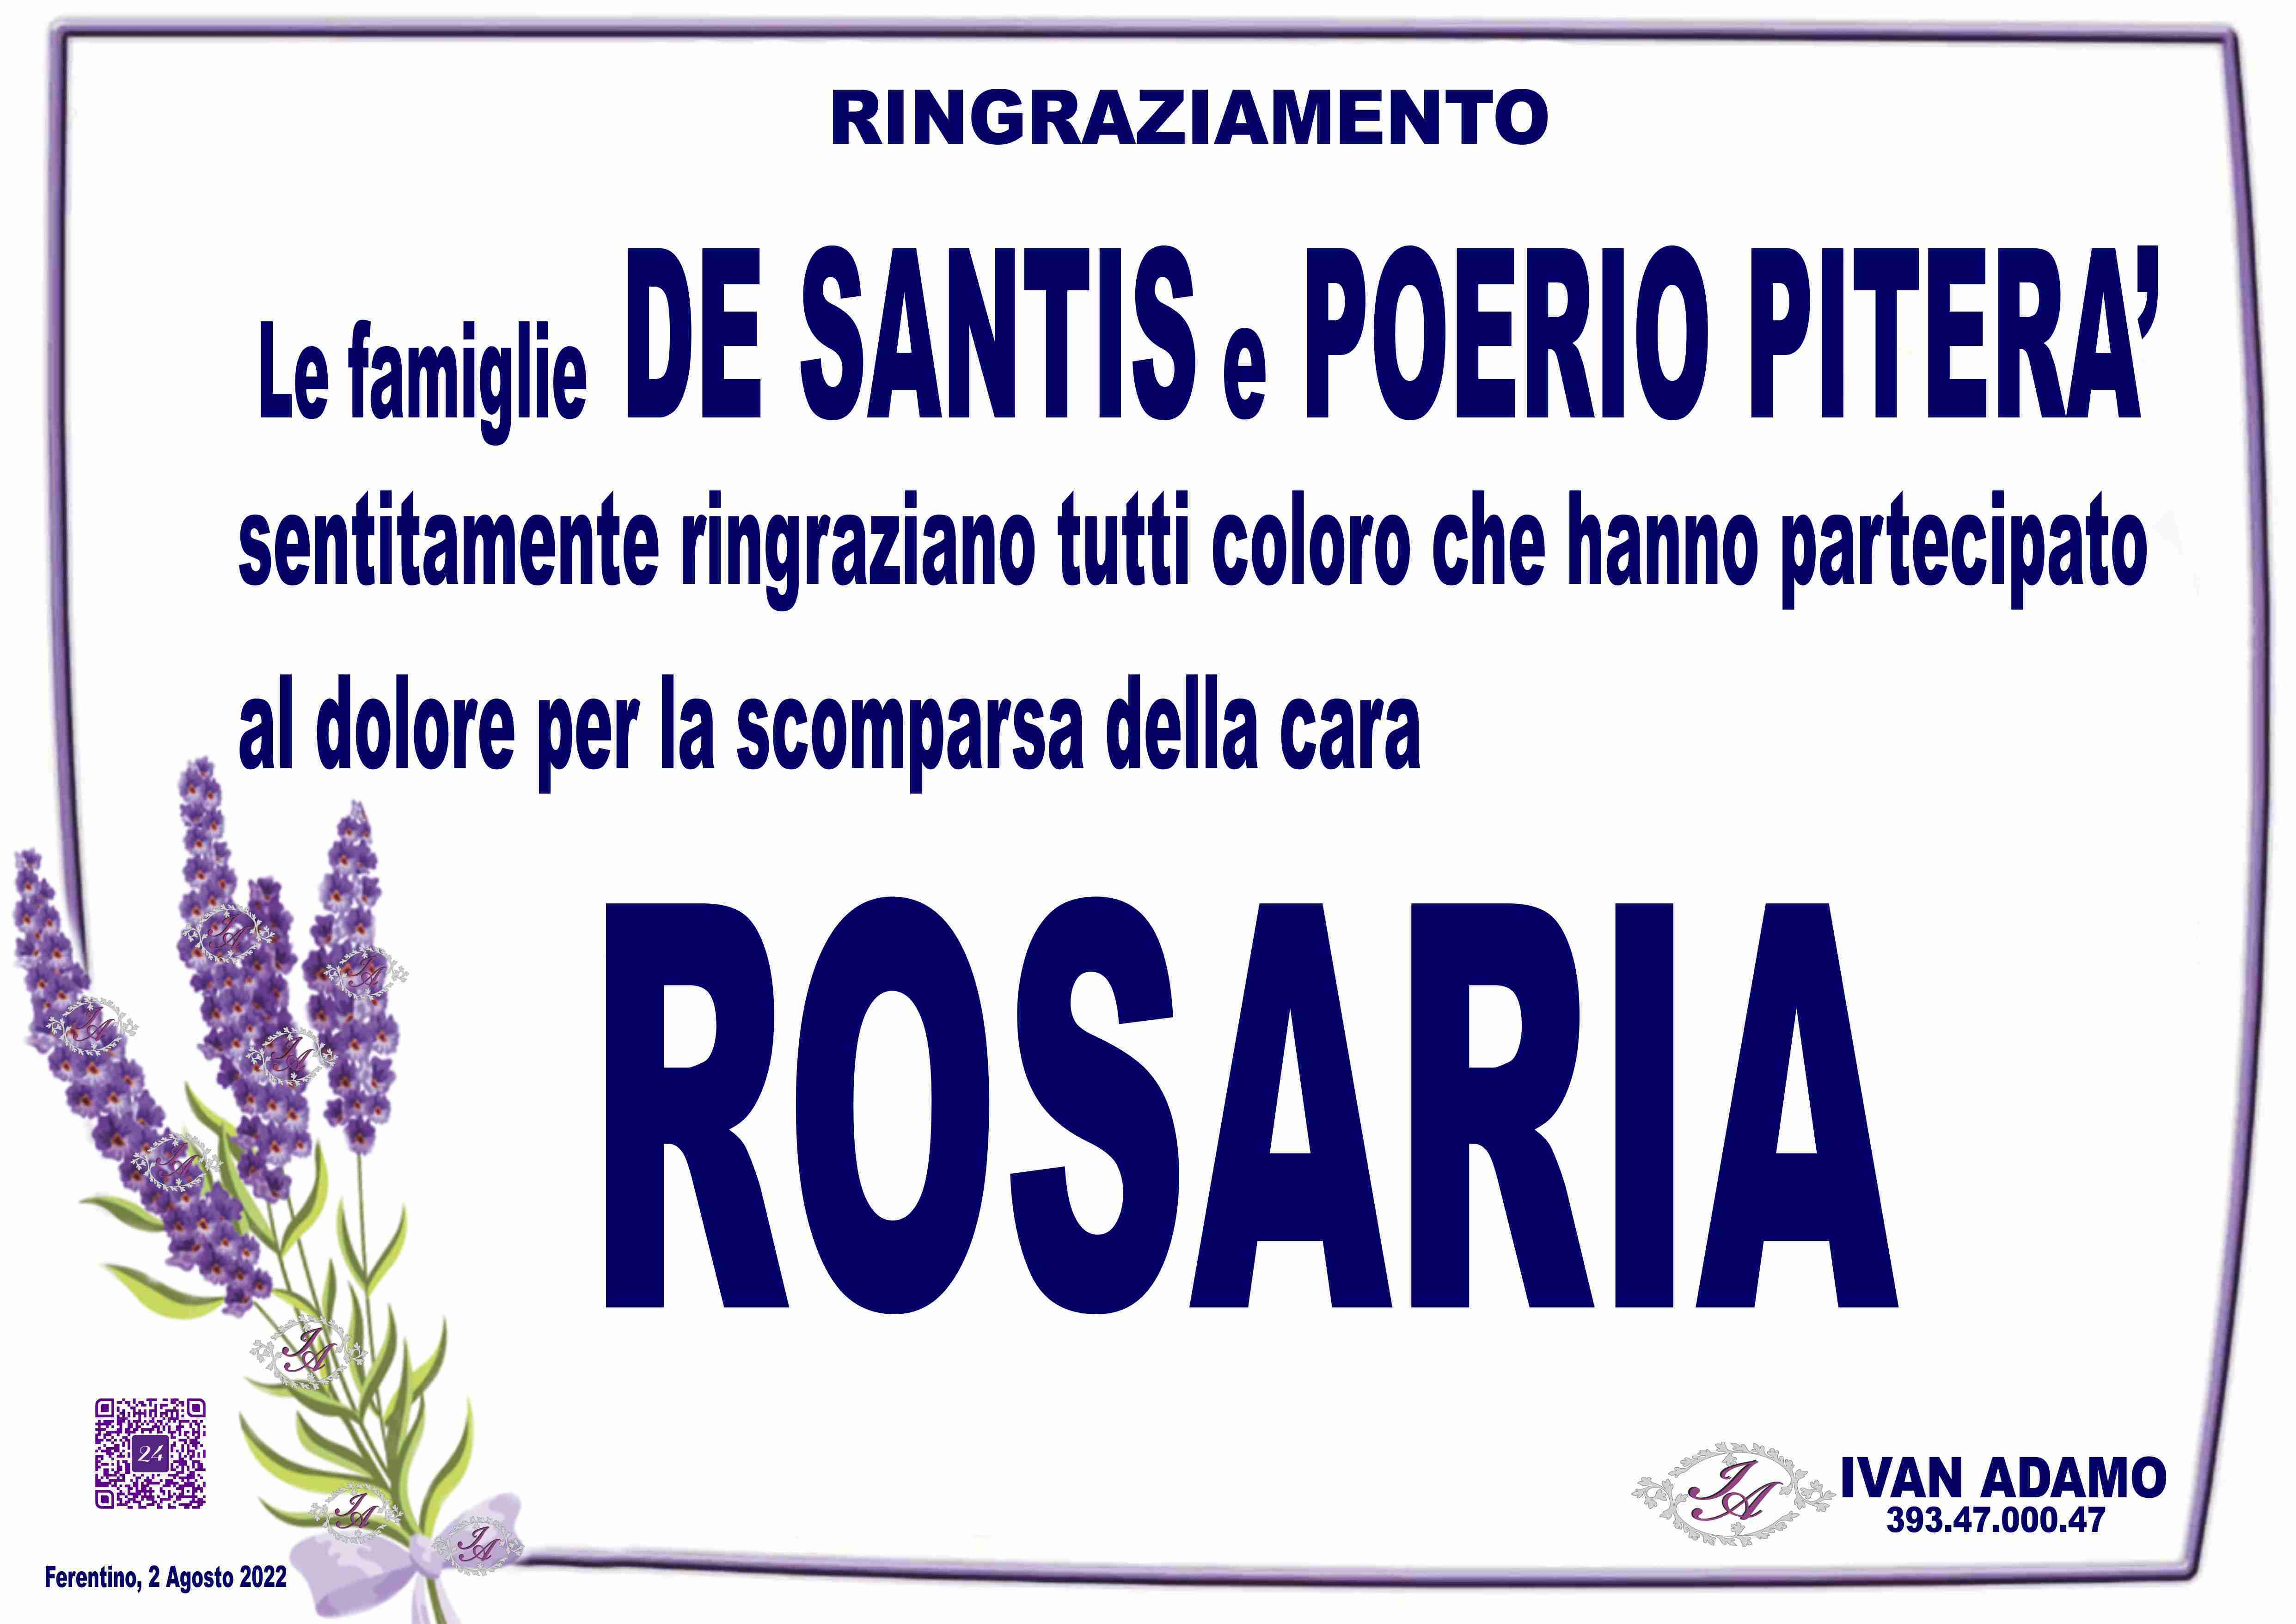 Rosaria Poerio Piterà